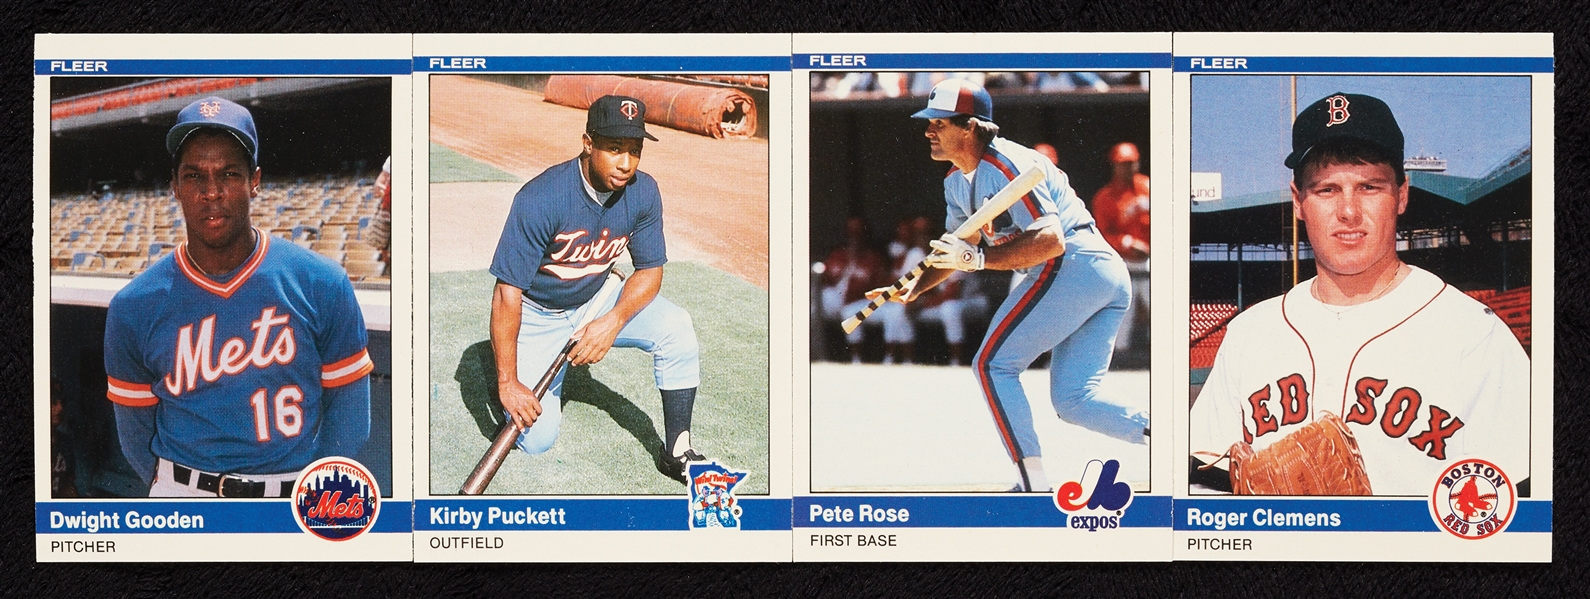 1984 Fleer Baseball Update Set (132)